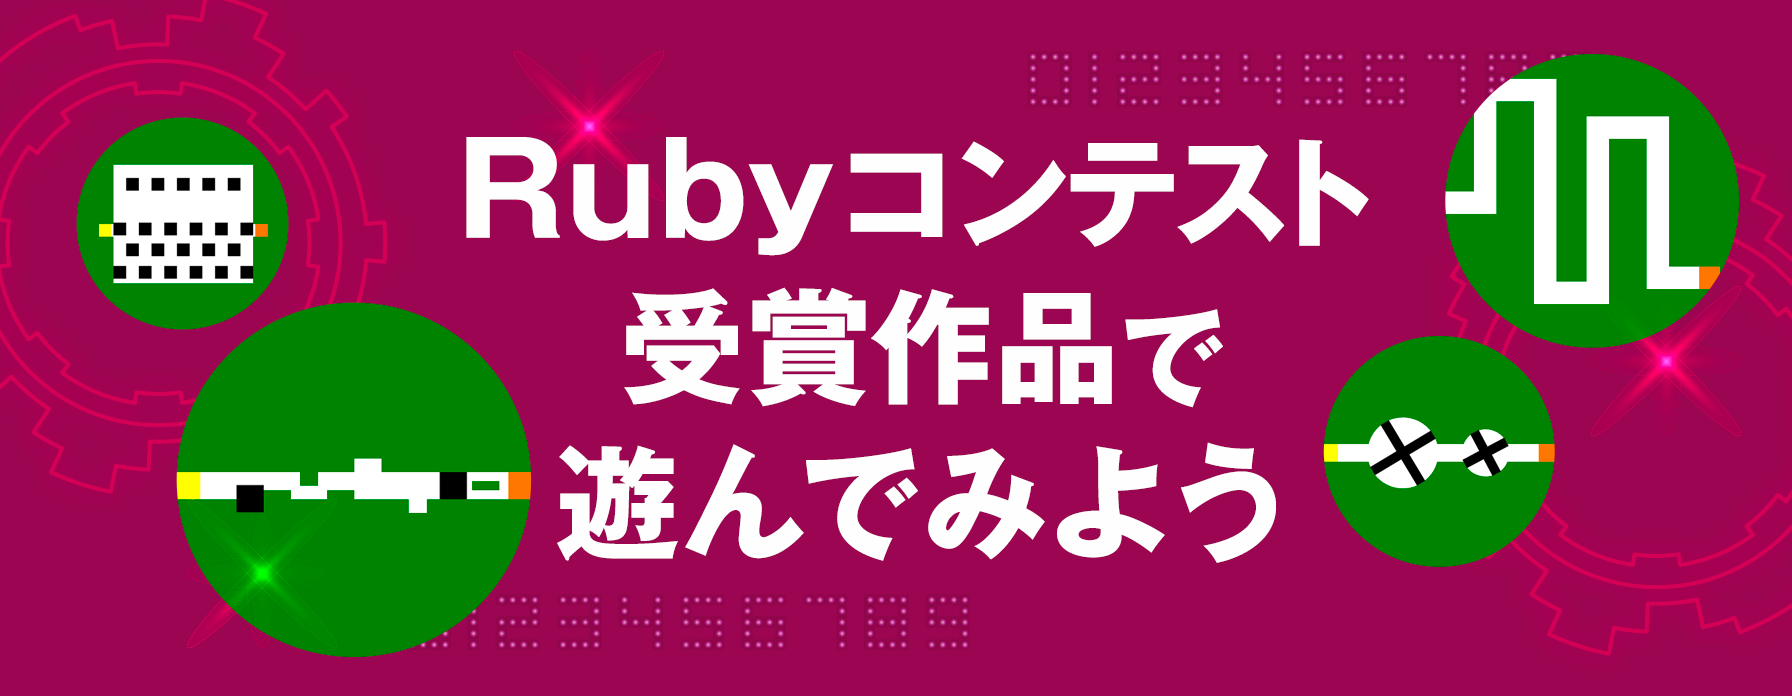 Rubyコンテスト受賞作品で遊んでみよう